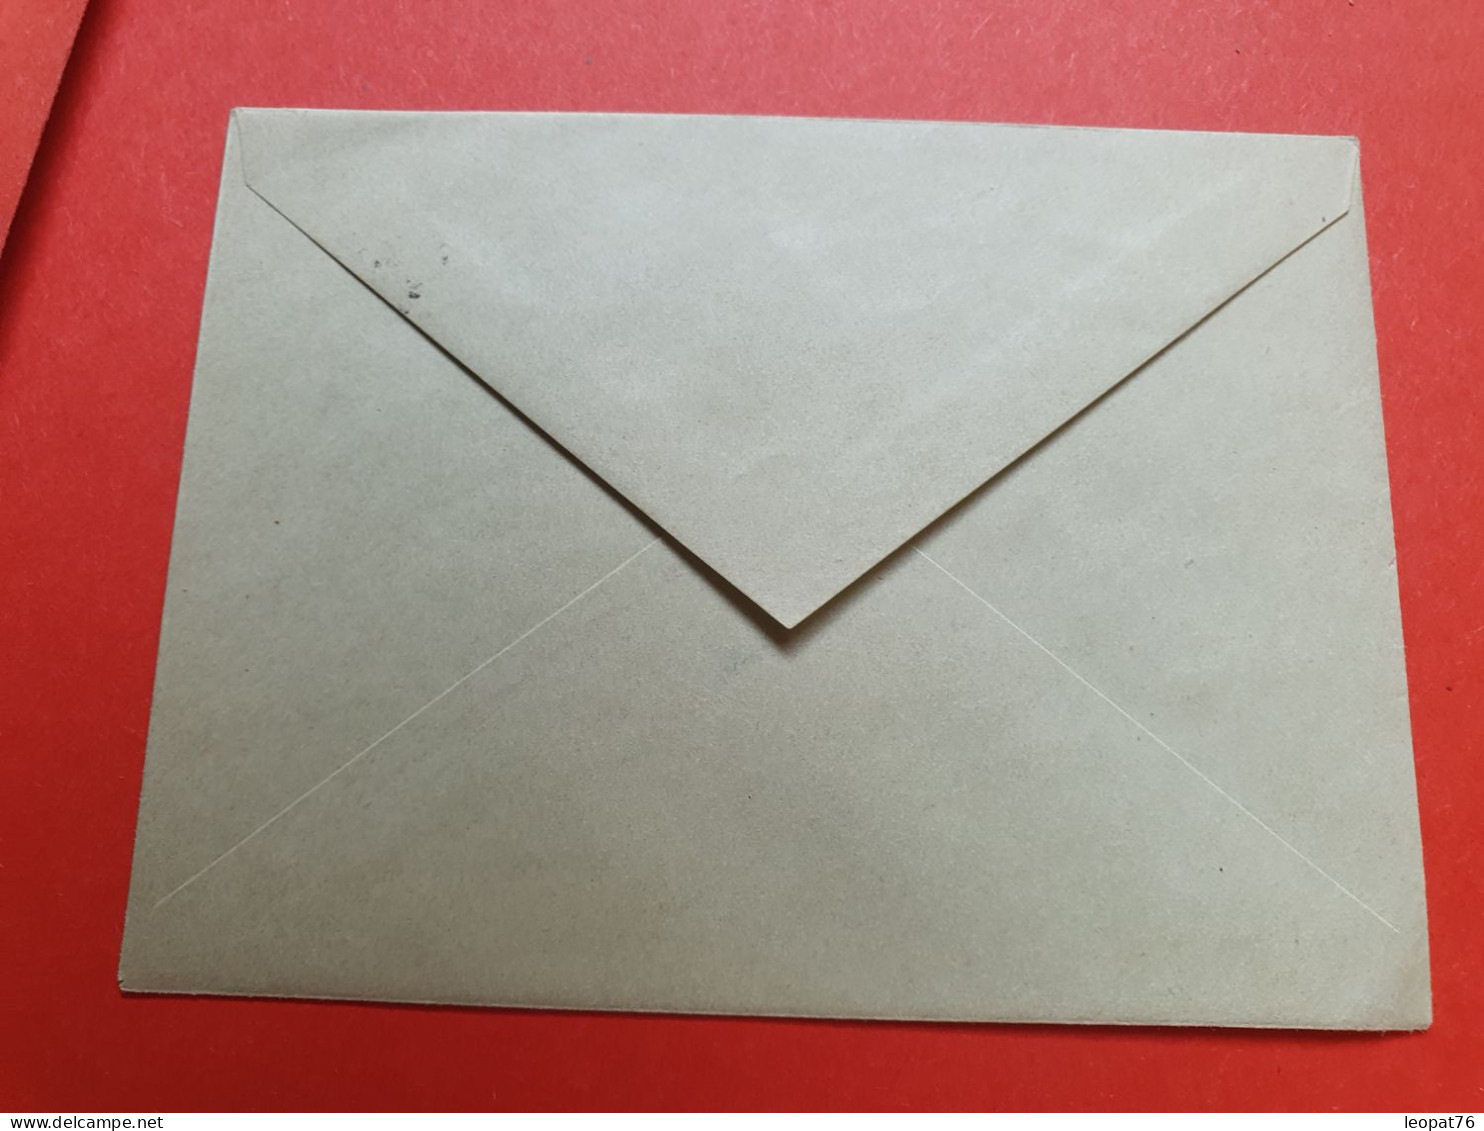 Entier Postal Type Mouchon 15ct Surchargé Taxe Réduite à 0f10, Non Utilisé - Réf 329 - Enveloppes Types Et TSC (avant 1995)